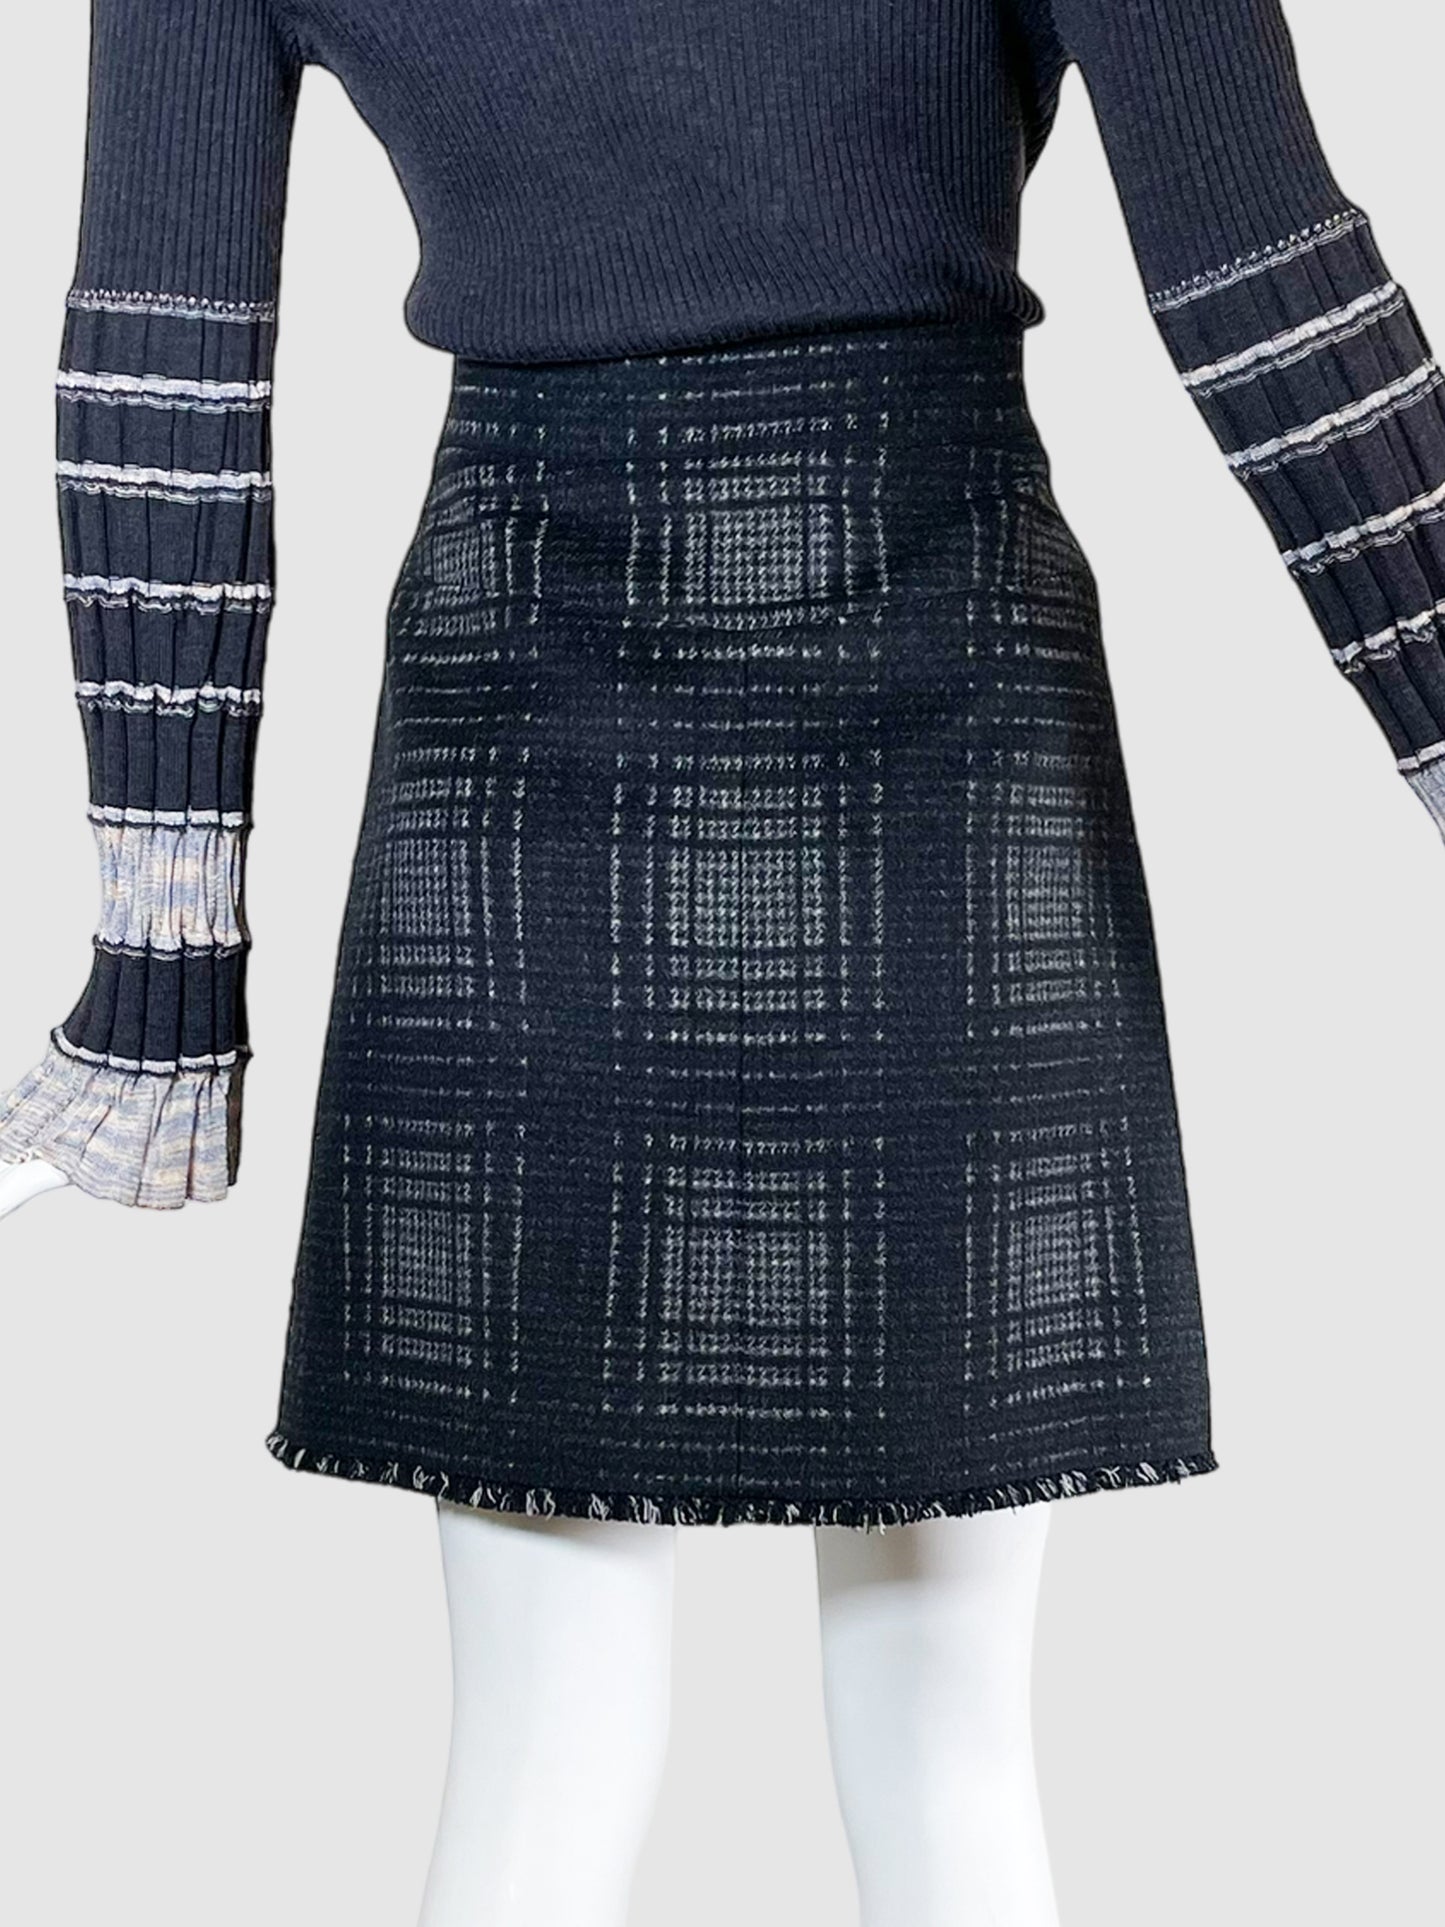 Vintage Chanel Plaid Tweed Mini Skirt - Size 42